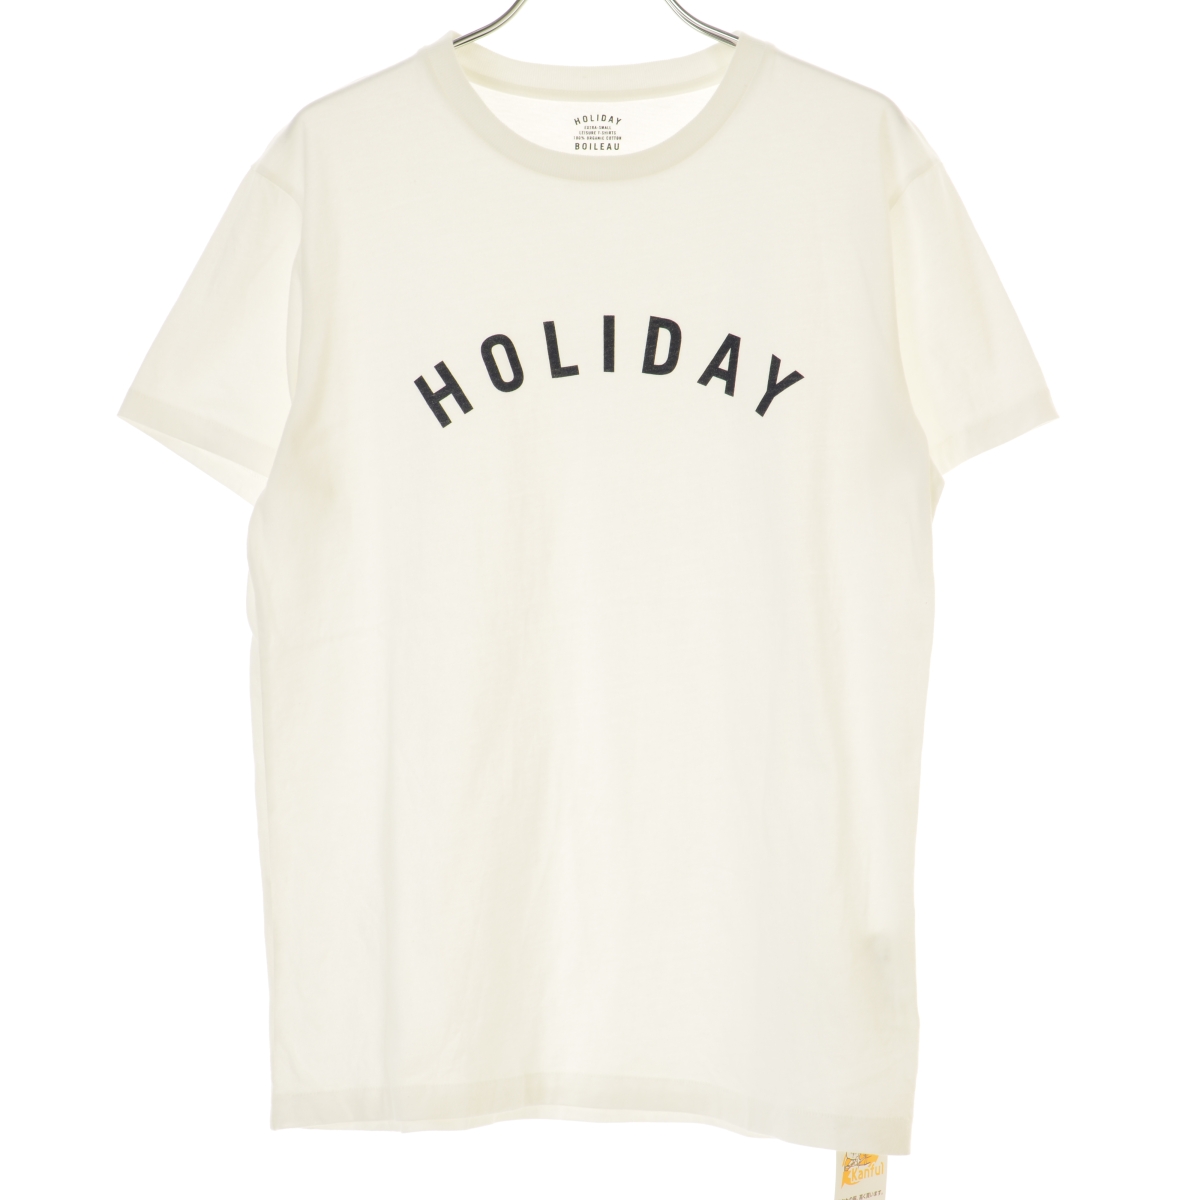 holiday / ホリディ L'APPARTEMENT 取り扱い 20070570001510 半袖Tシャツ -ブランド古着の買取販売カンフル